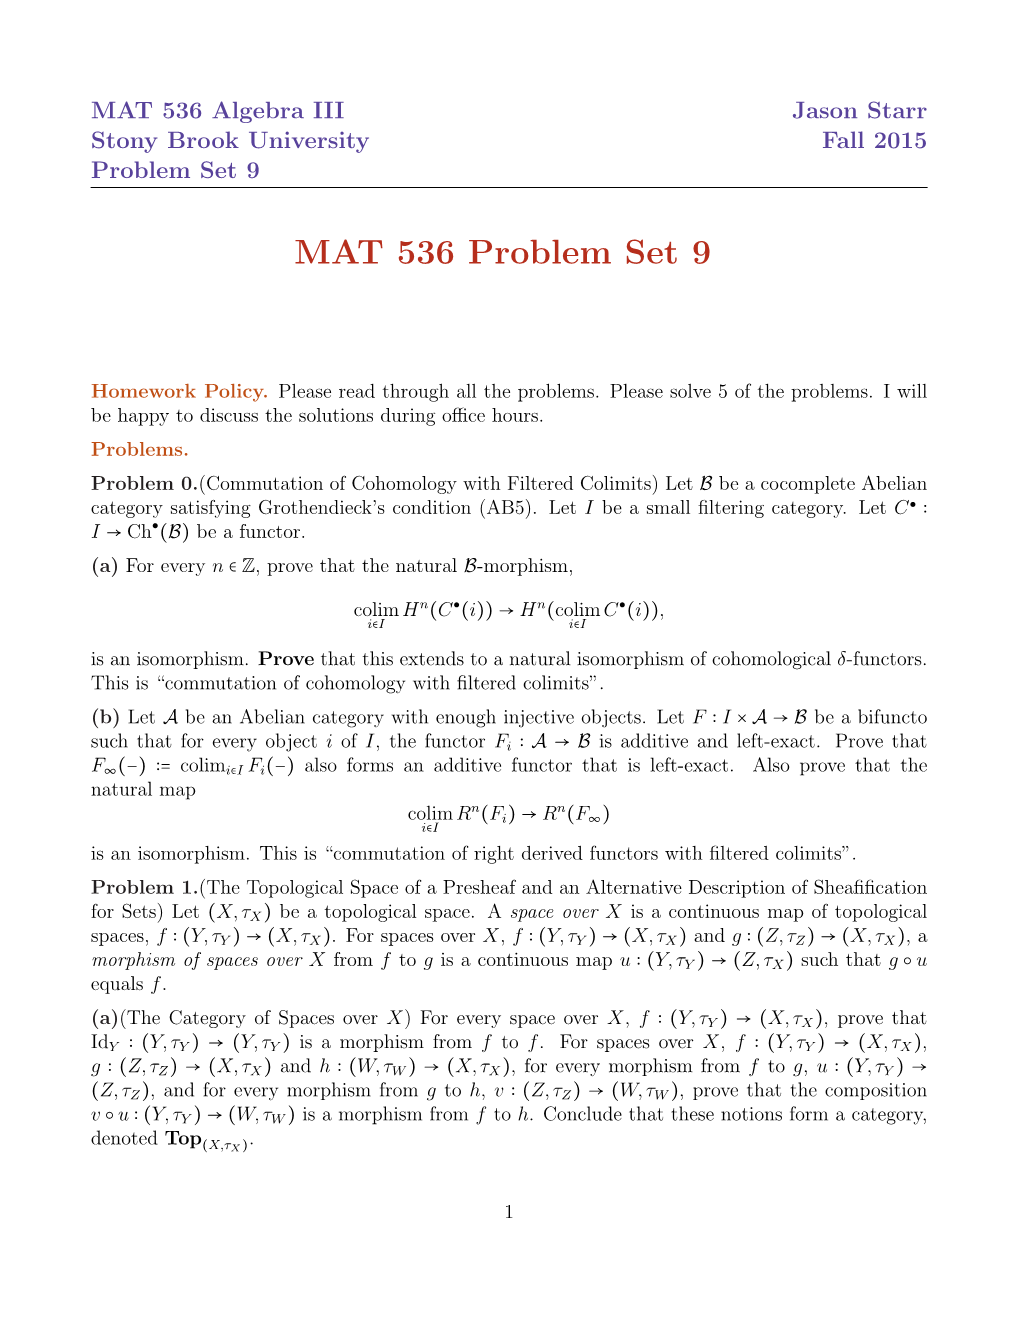 MAT 536 Problem Set 9